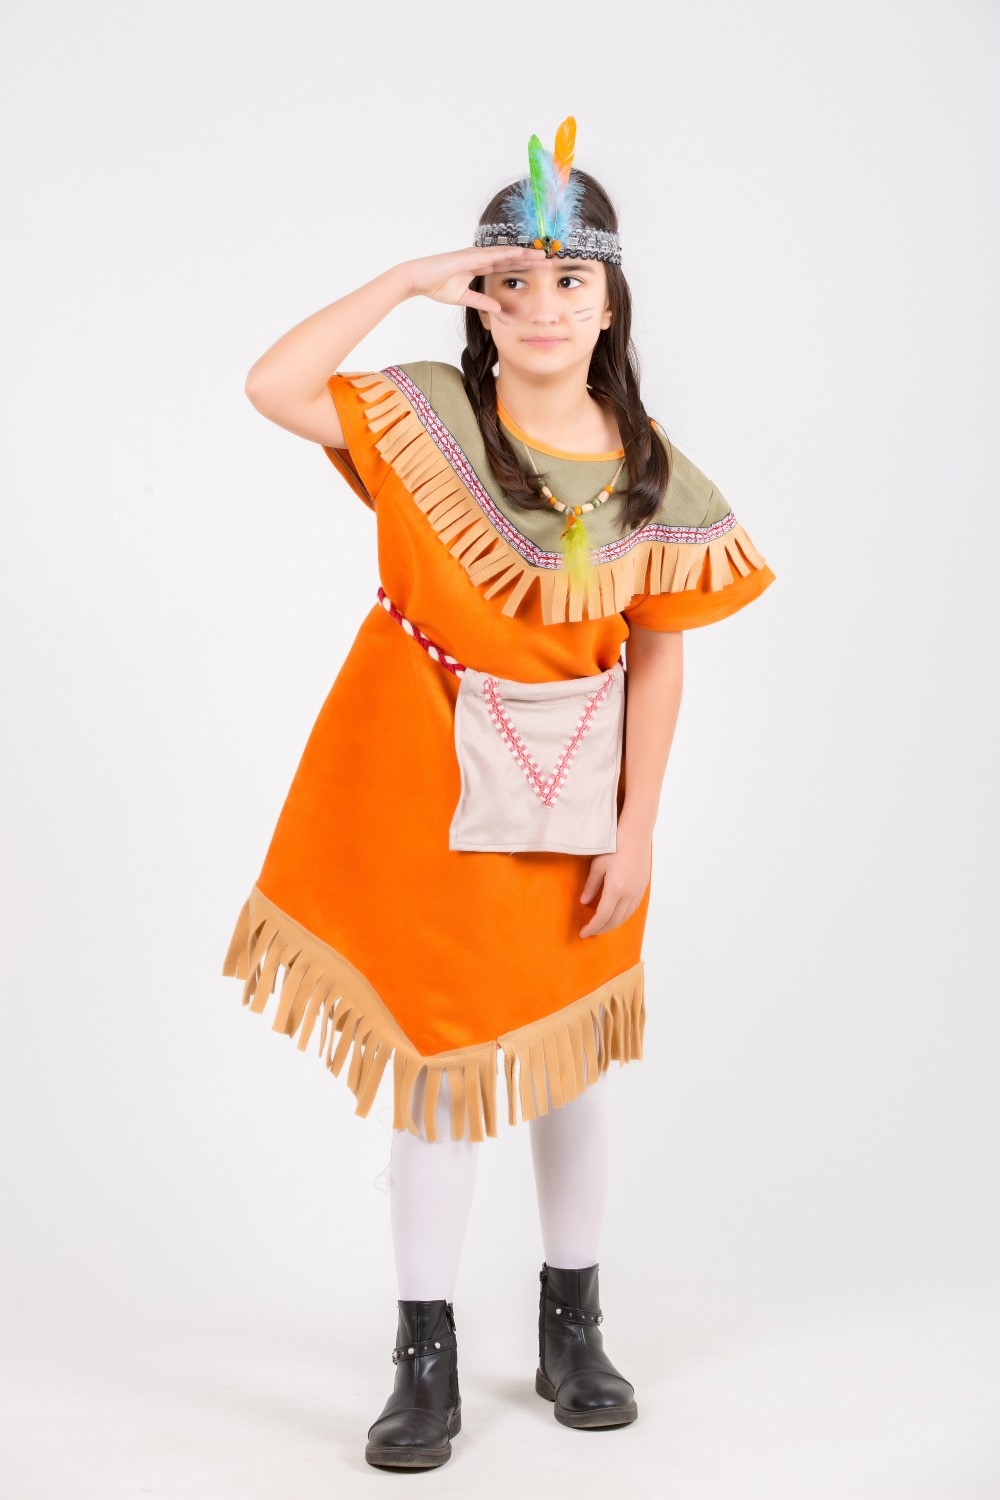 ülke-kızılderili-turuncu-kız-kostumu.